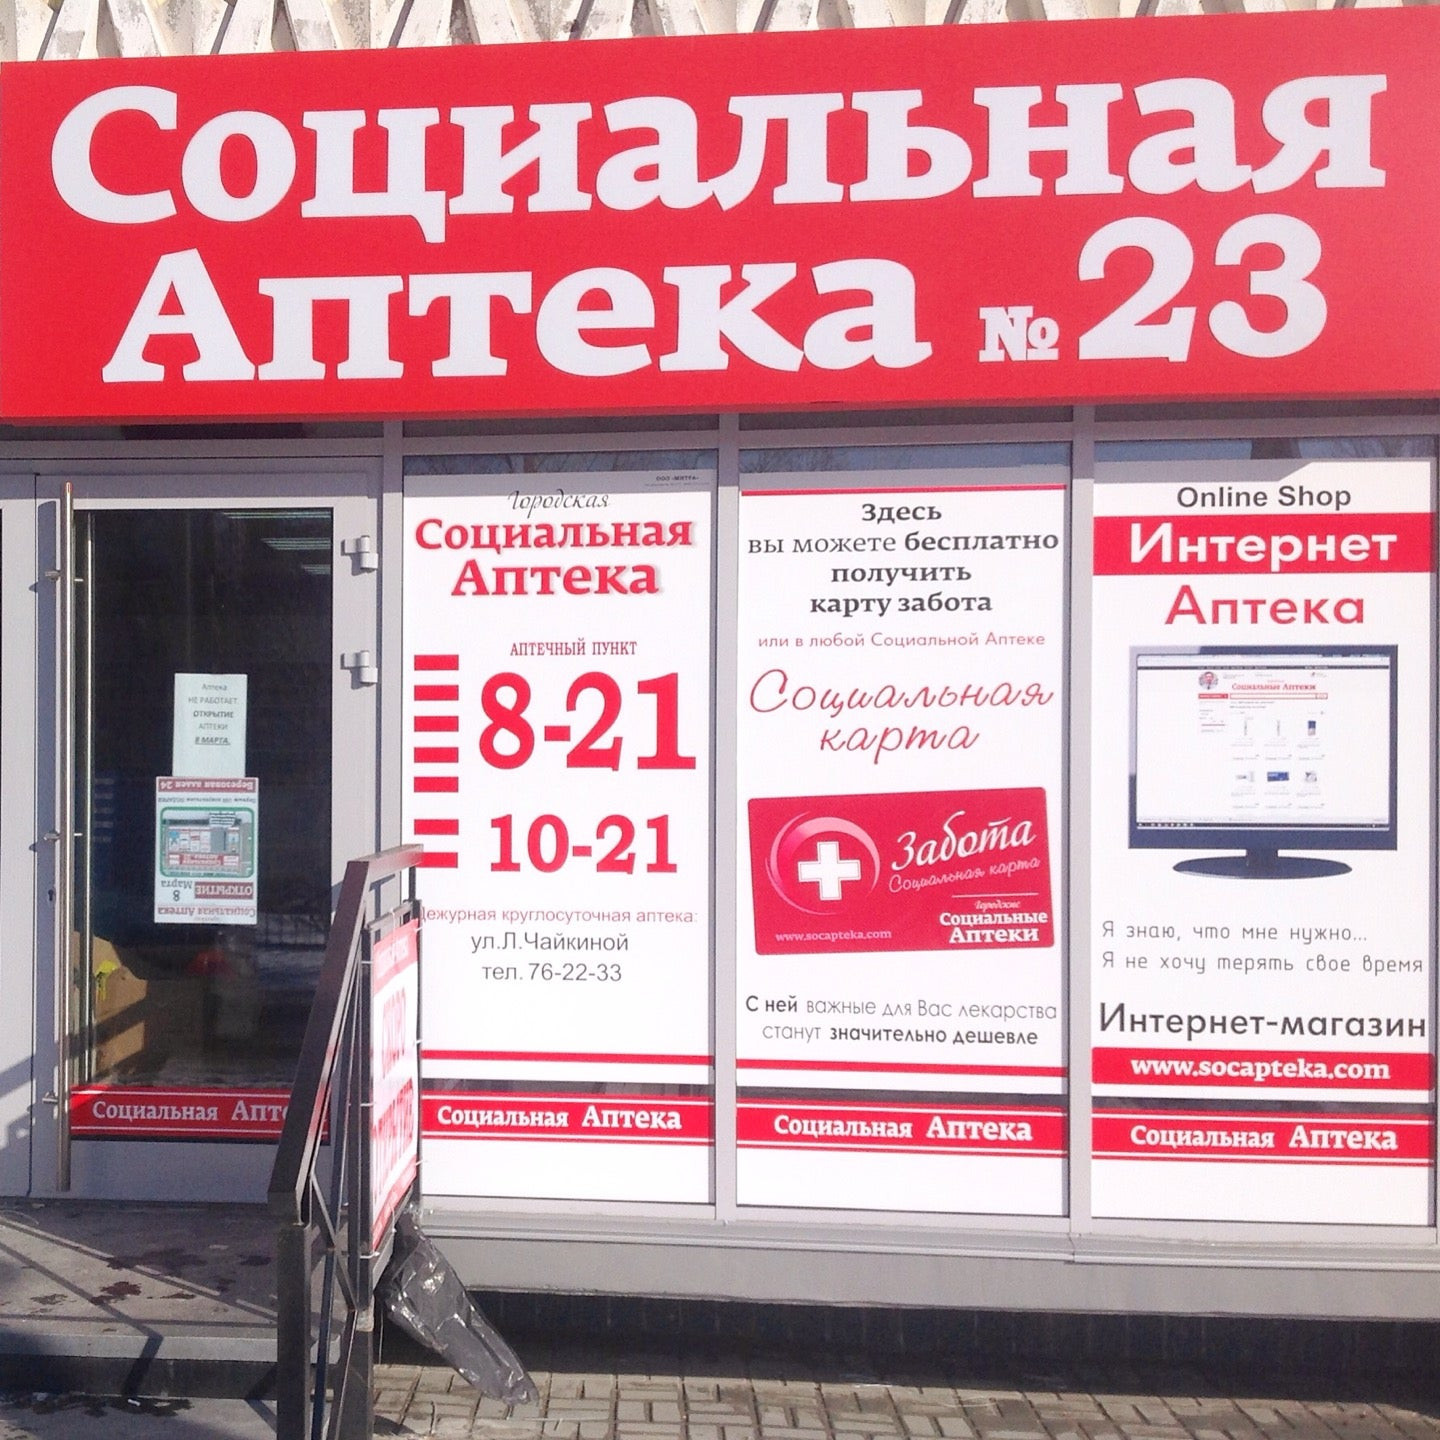 Аптека с доставкой на дом московская. Интернет-аптека с доставкой. Доставка аптека круглосуточно. Круглосуточная доставка аптека. Круглосуточная аптека с доставкой на дом.